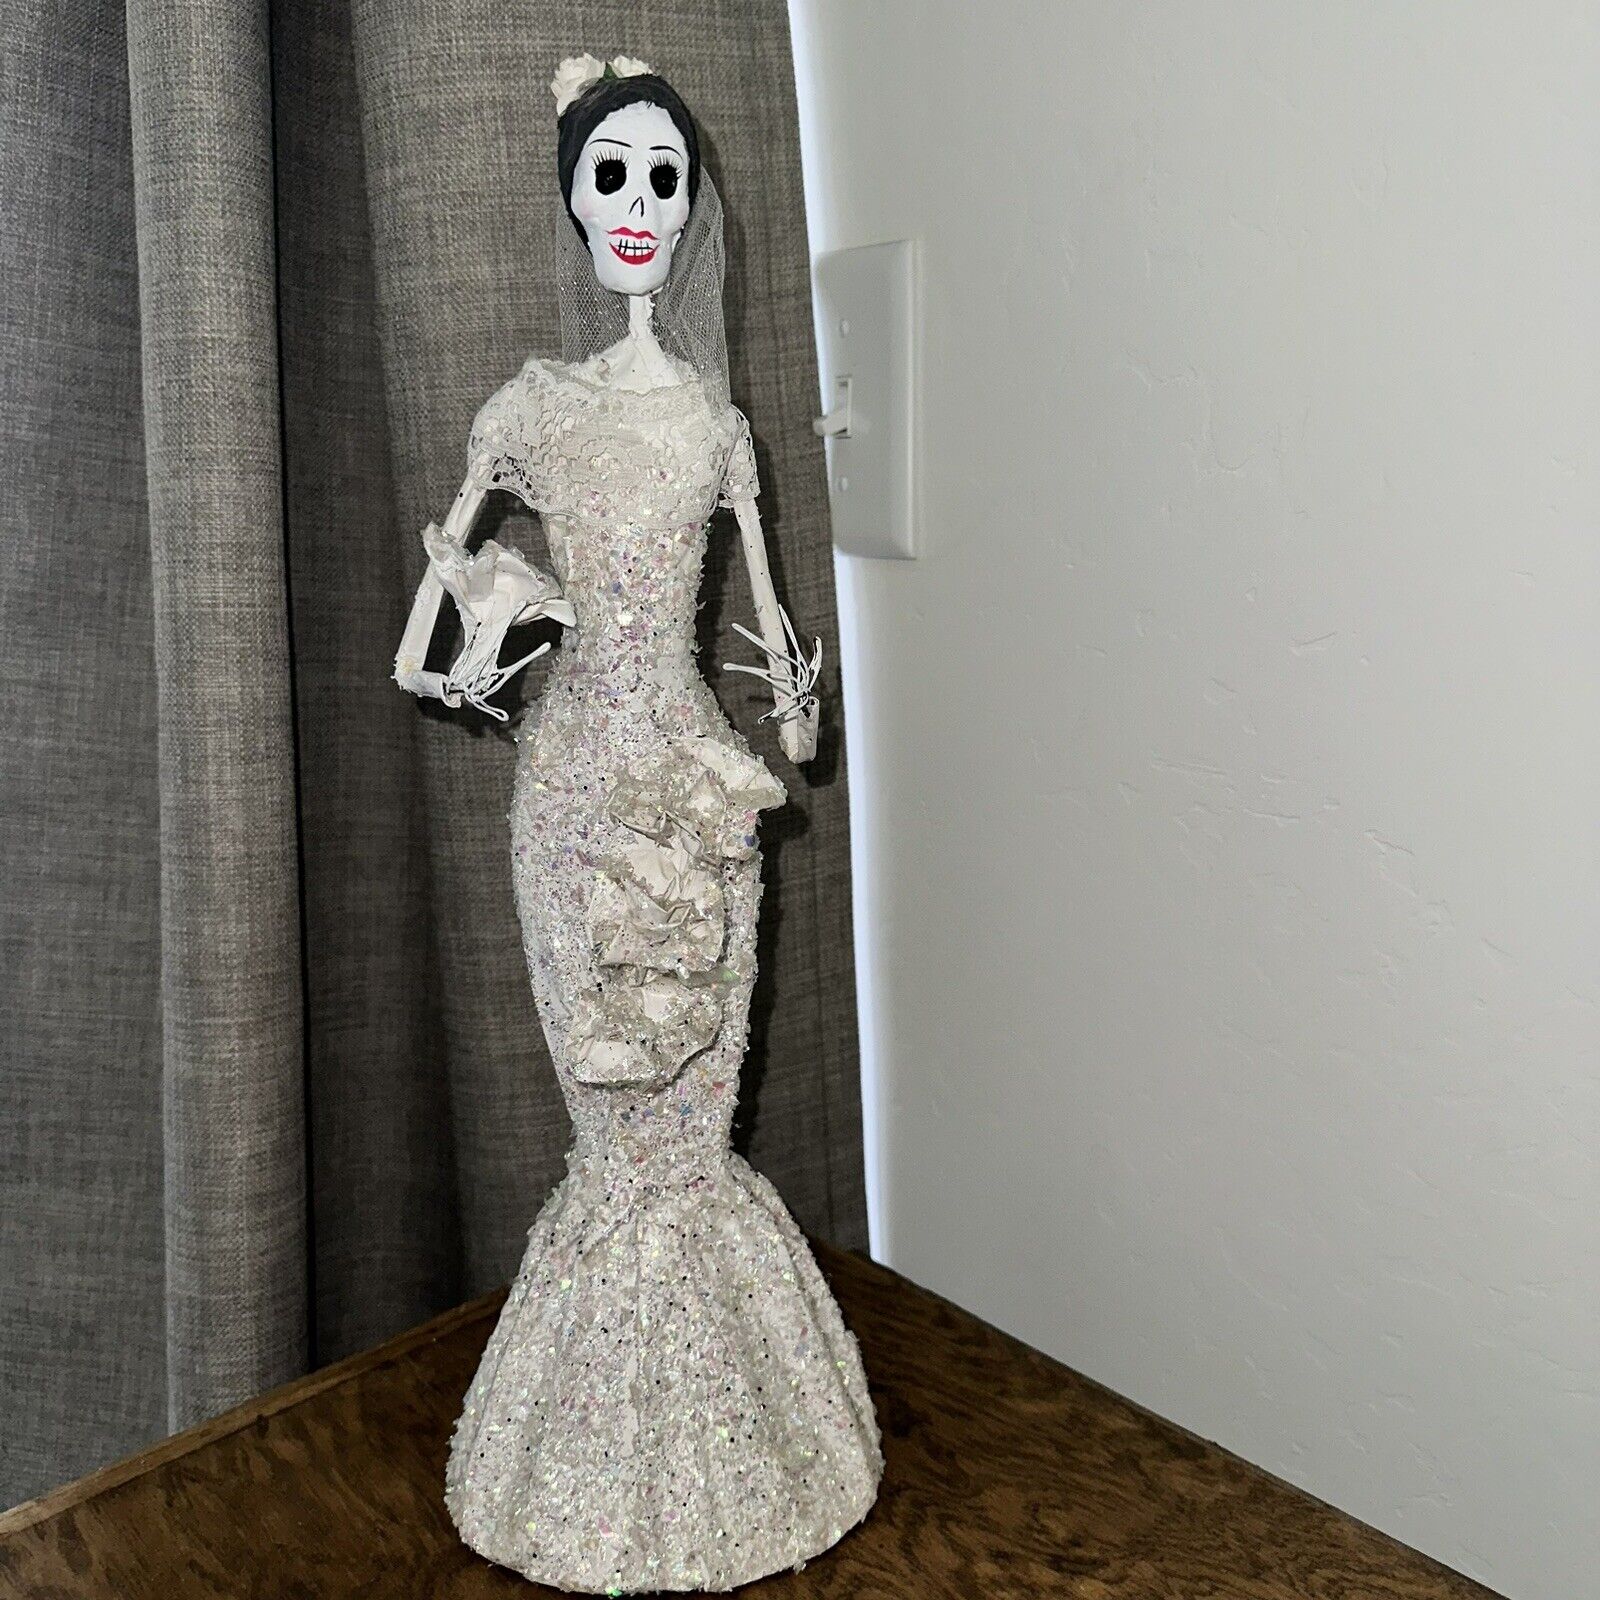 La Calavera Catrina Dia de Los Muertos Paper Mache Figure 17” Handmade Unique